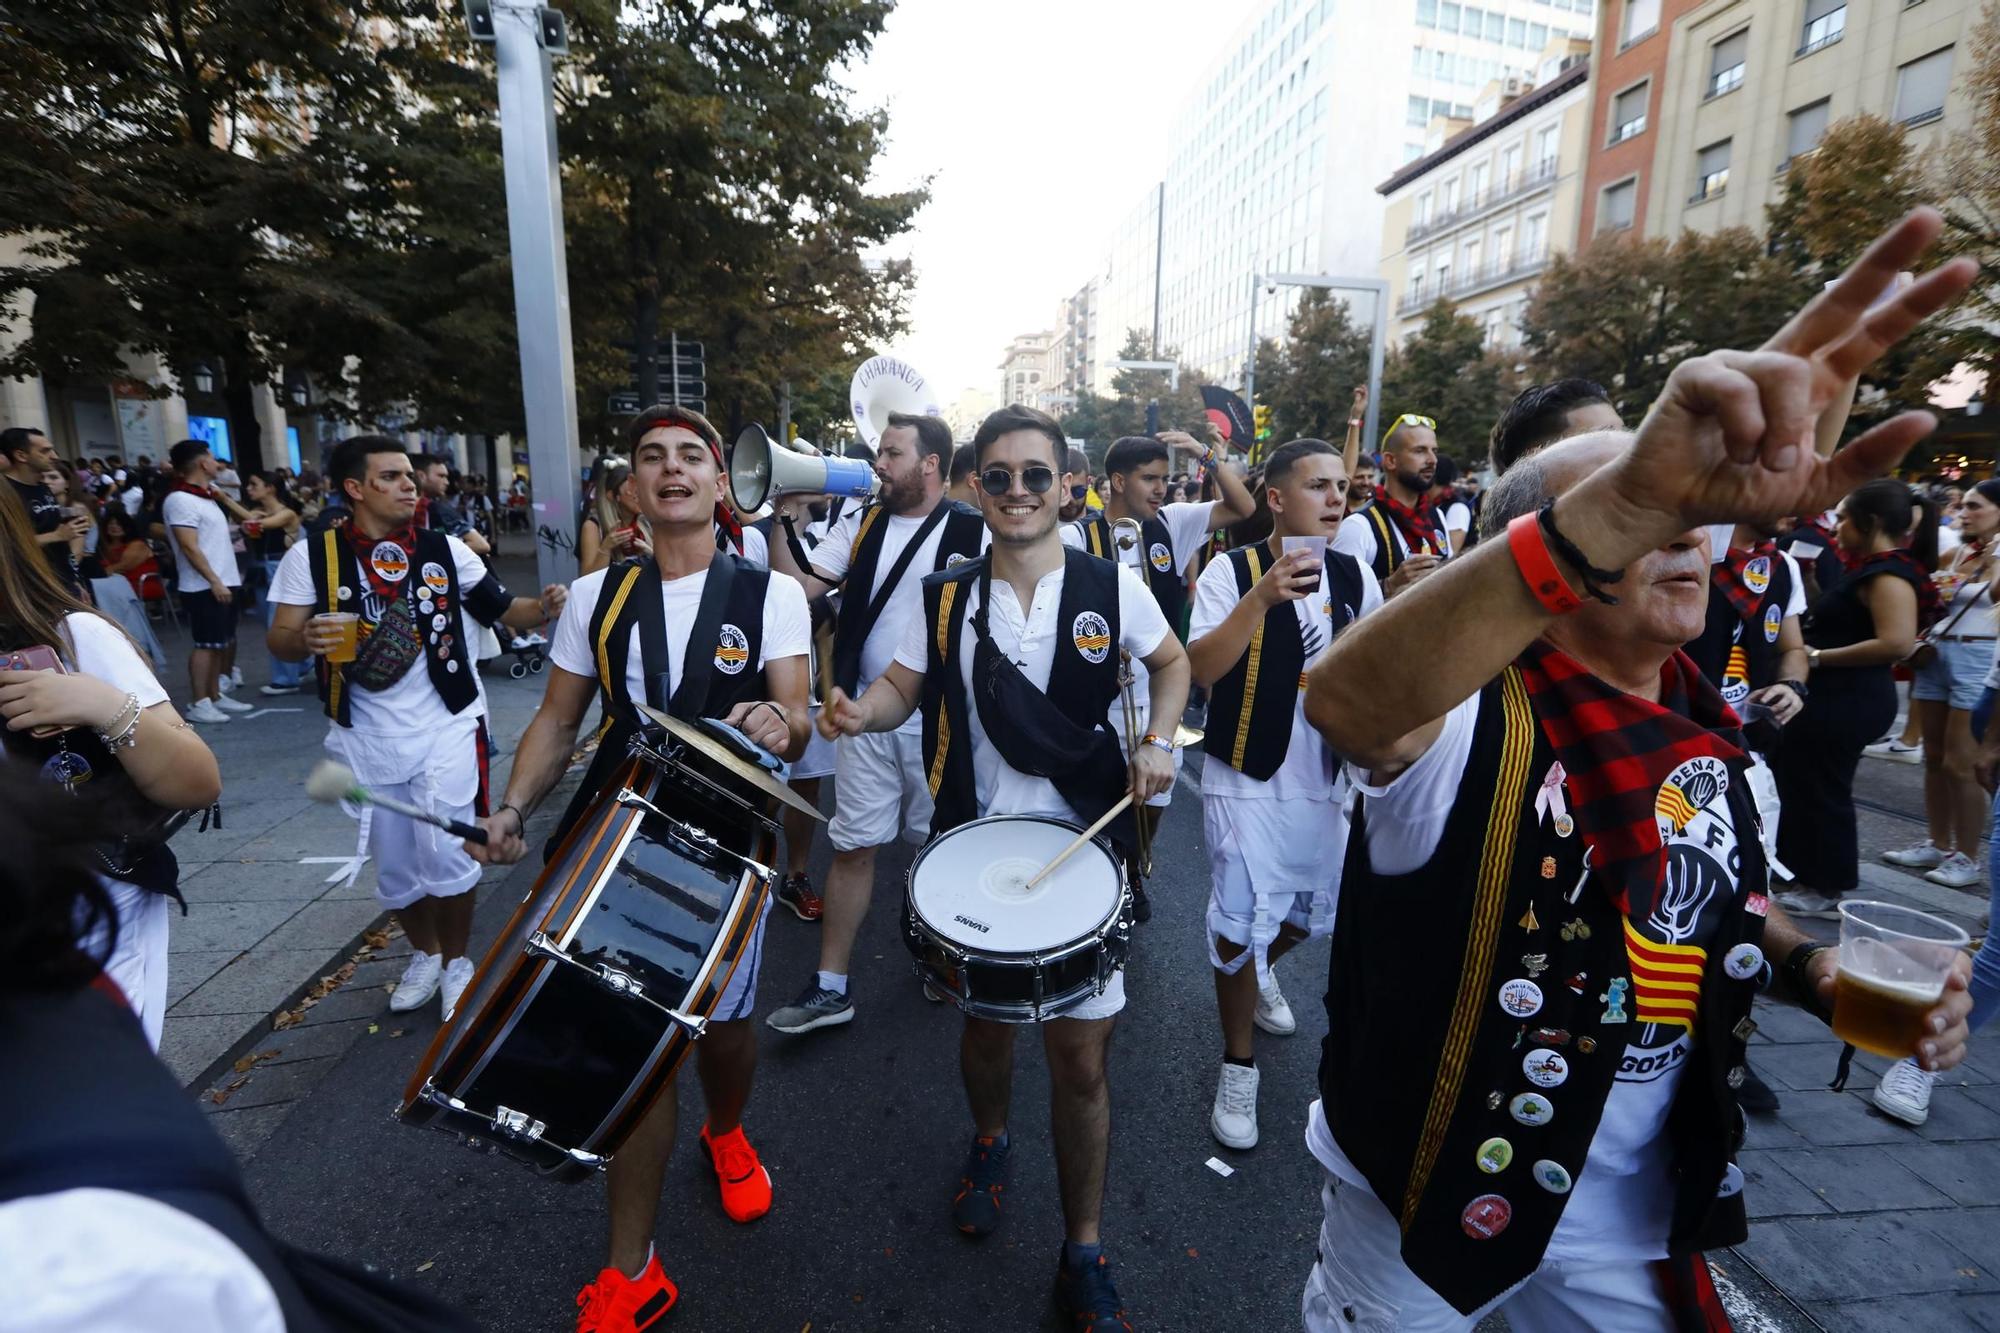 EN IMÁGENES | Las calles de Zaragoza se llenan de alegría con el desfile del pregón